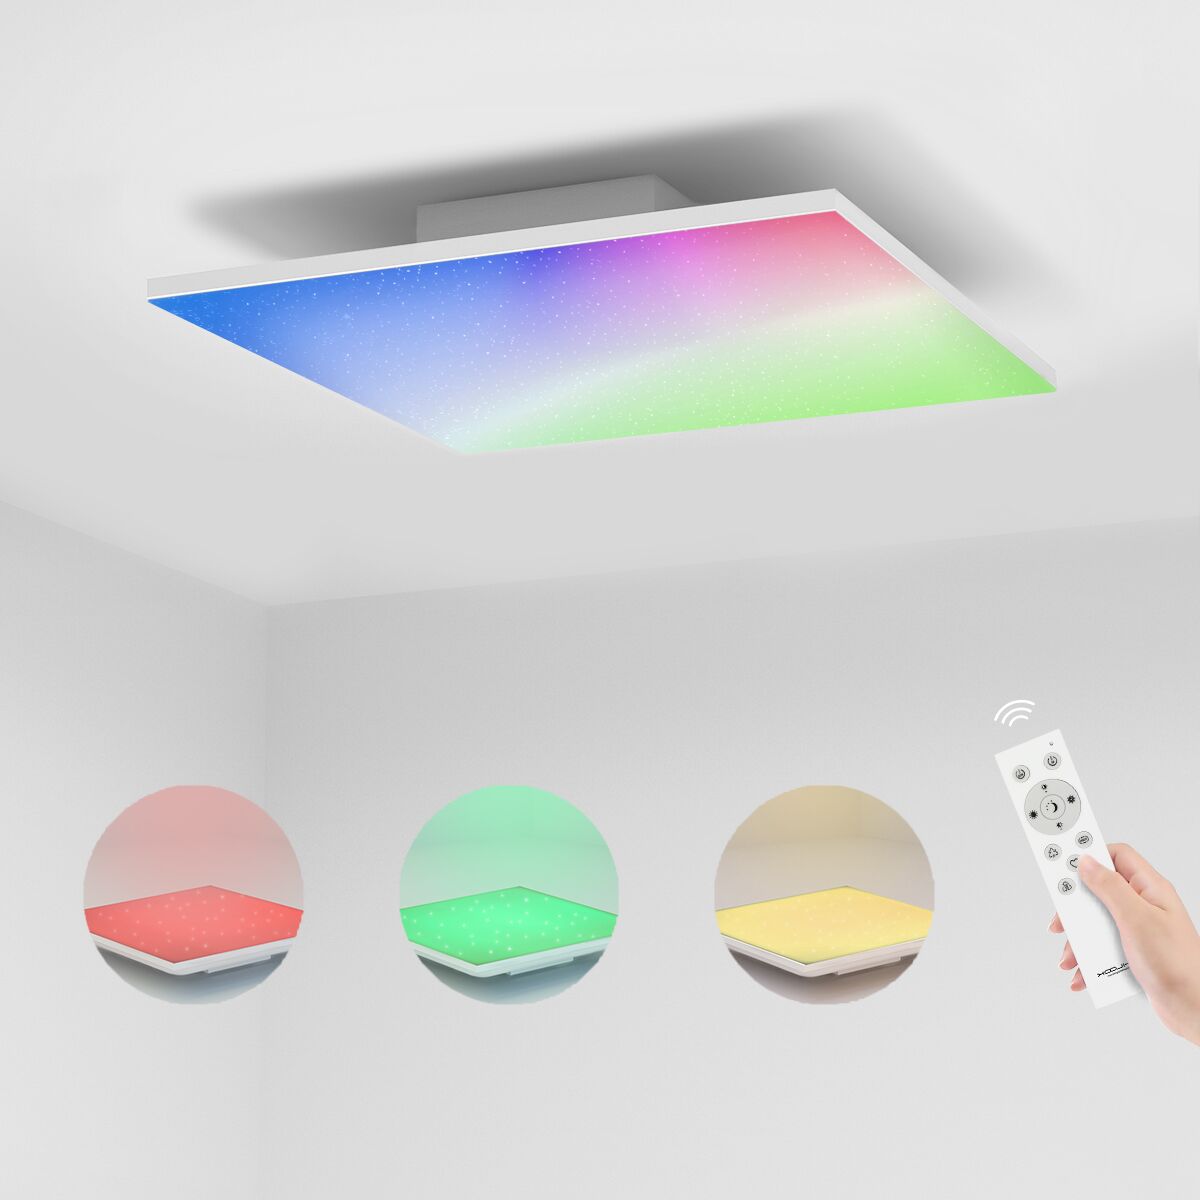 RGB LED Deckenleuchte Dimmbar Deckenlampe Sternenhimmel Wohnzimmer  Fernbedienung